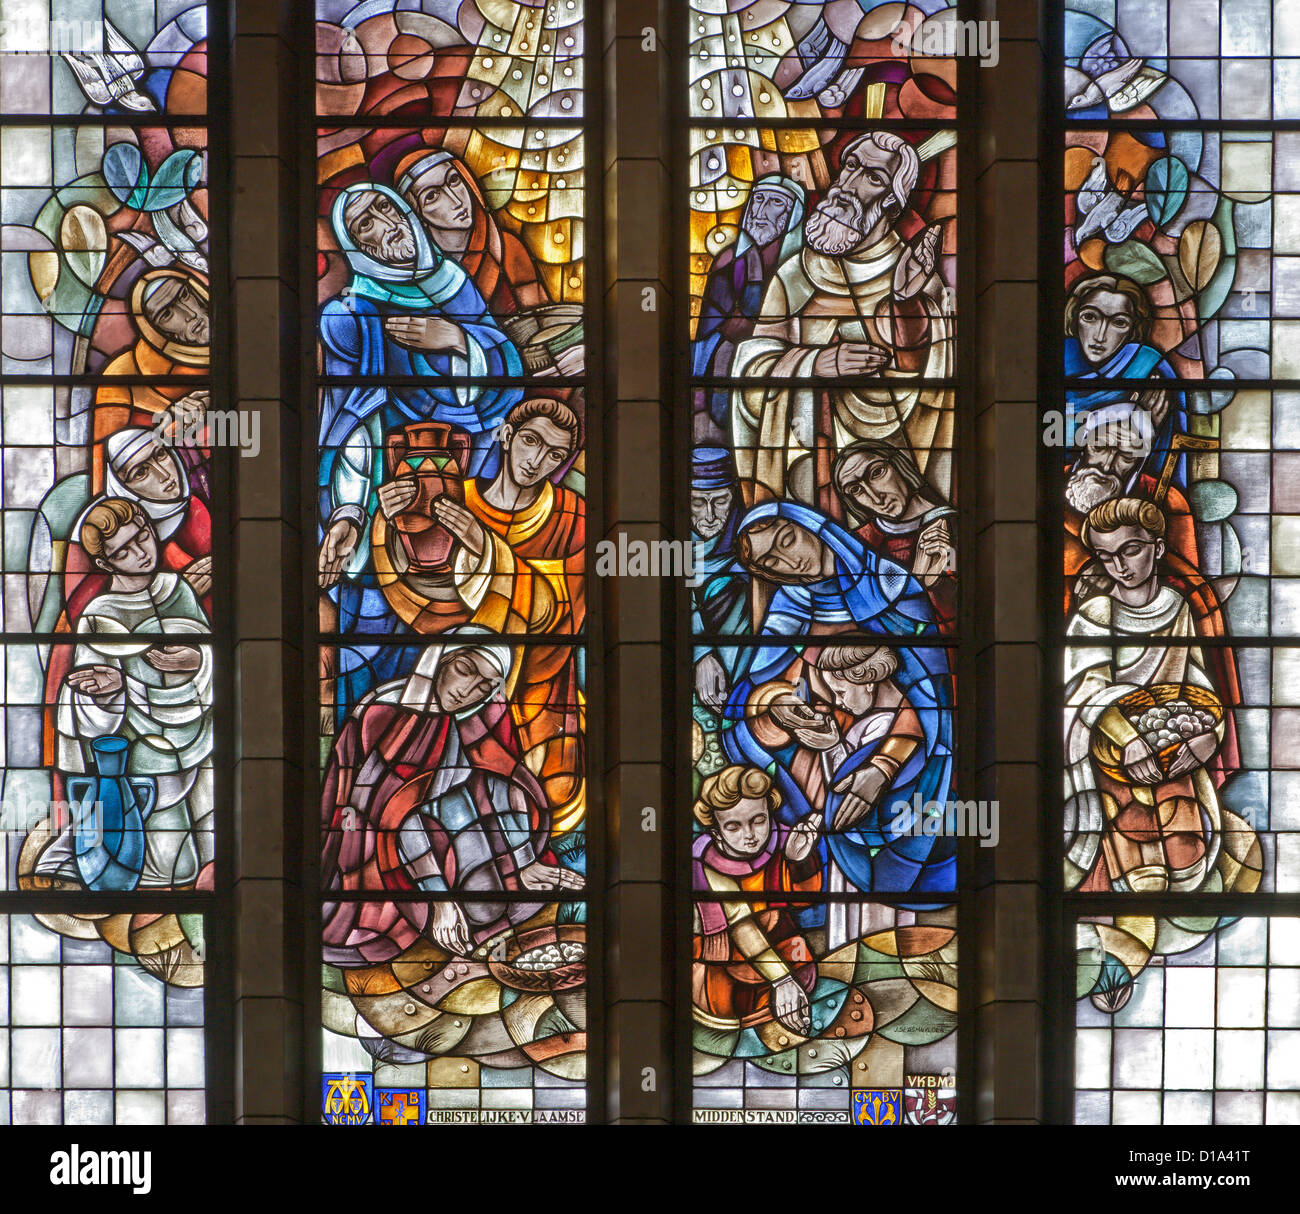 Bruxelles - 22 giugno: raccolta della Manna. Scena dal Vecchio Testamento. Dettagli dalla vetrata della Basilica nazionale Foto Stock